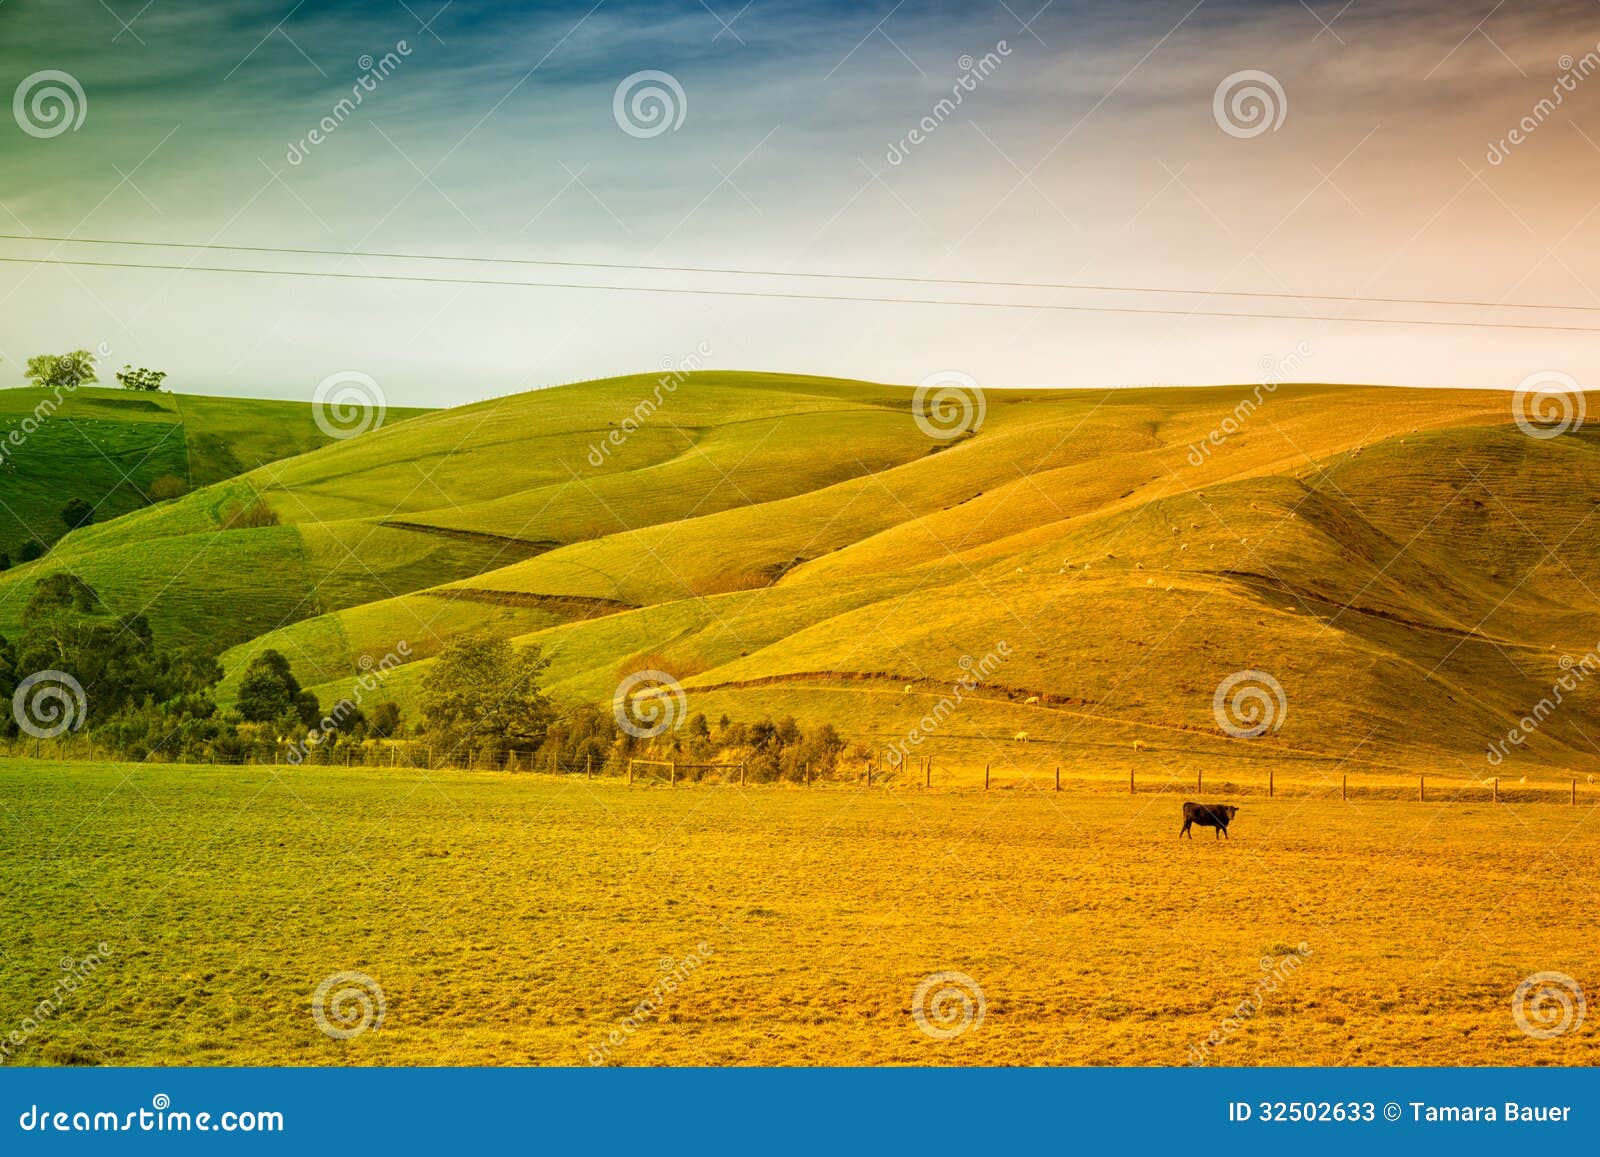 farmland in australia